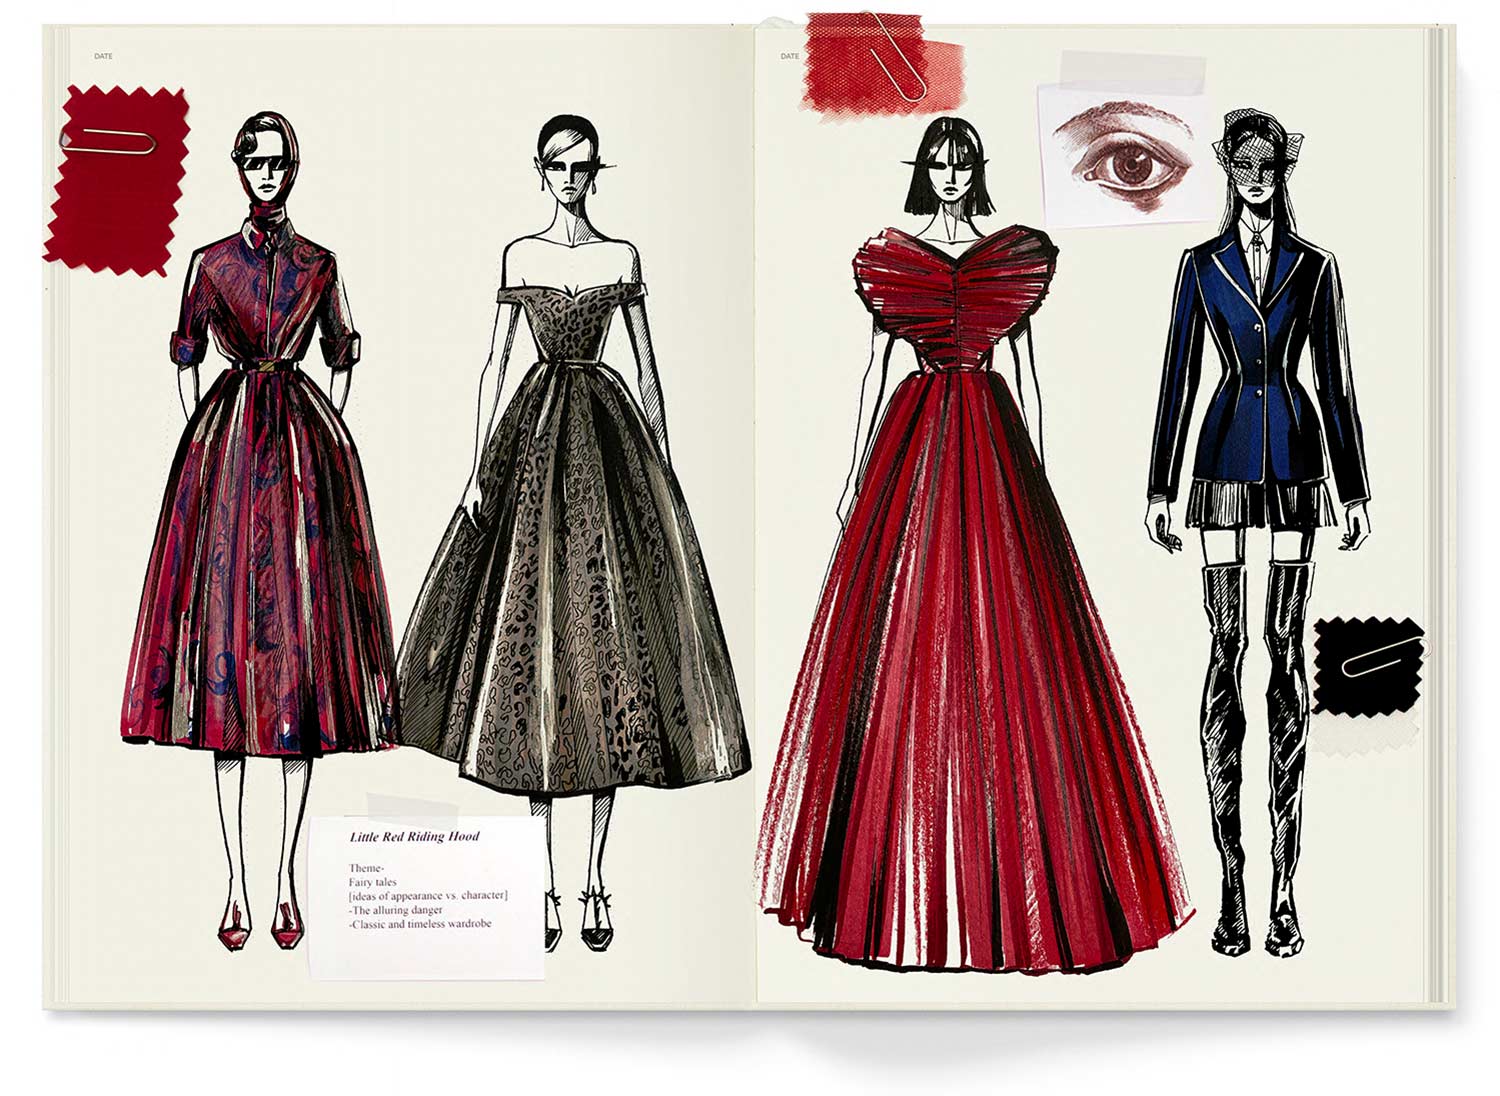 Womenswear Sketchbook A4 – Fashionary